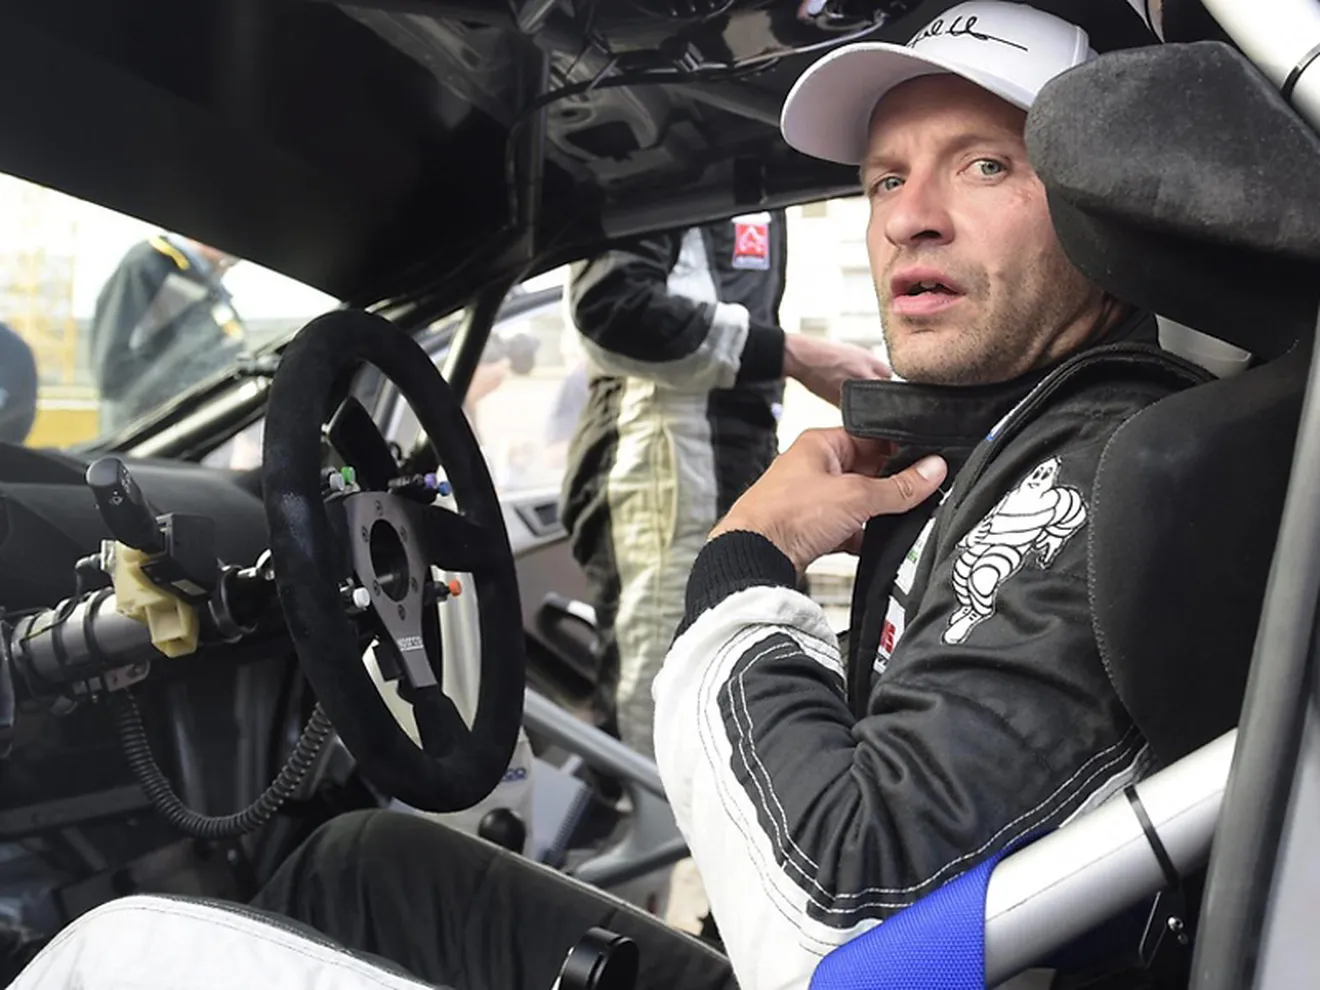 Juho Hänninen será piloto Toyota en el WRC 2017